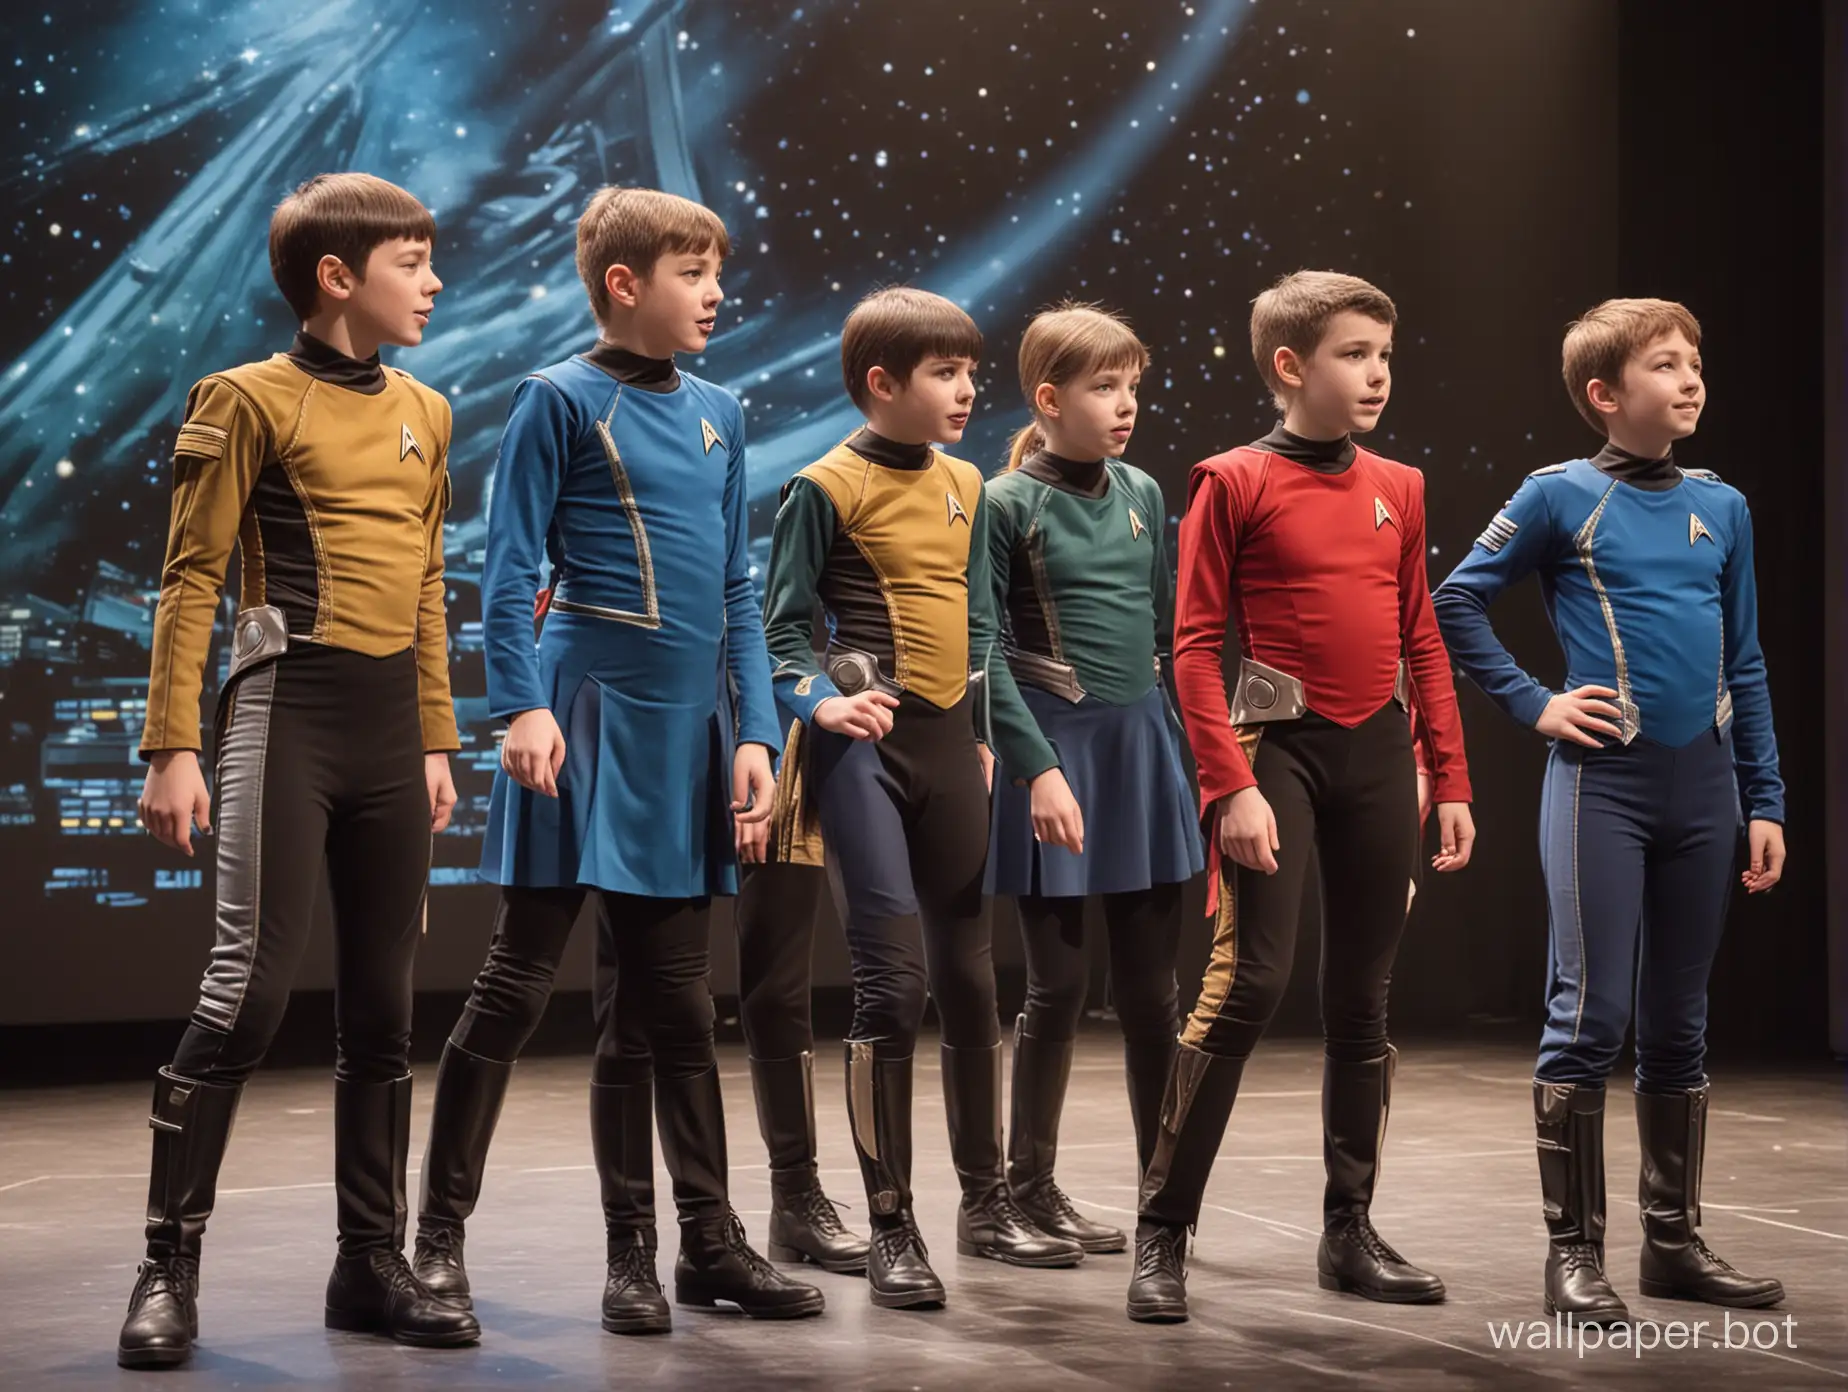 Stage-Play-Schoolchildren-Aged-12-in-Star-Trek-Costumes